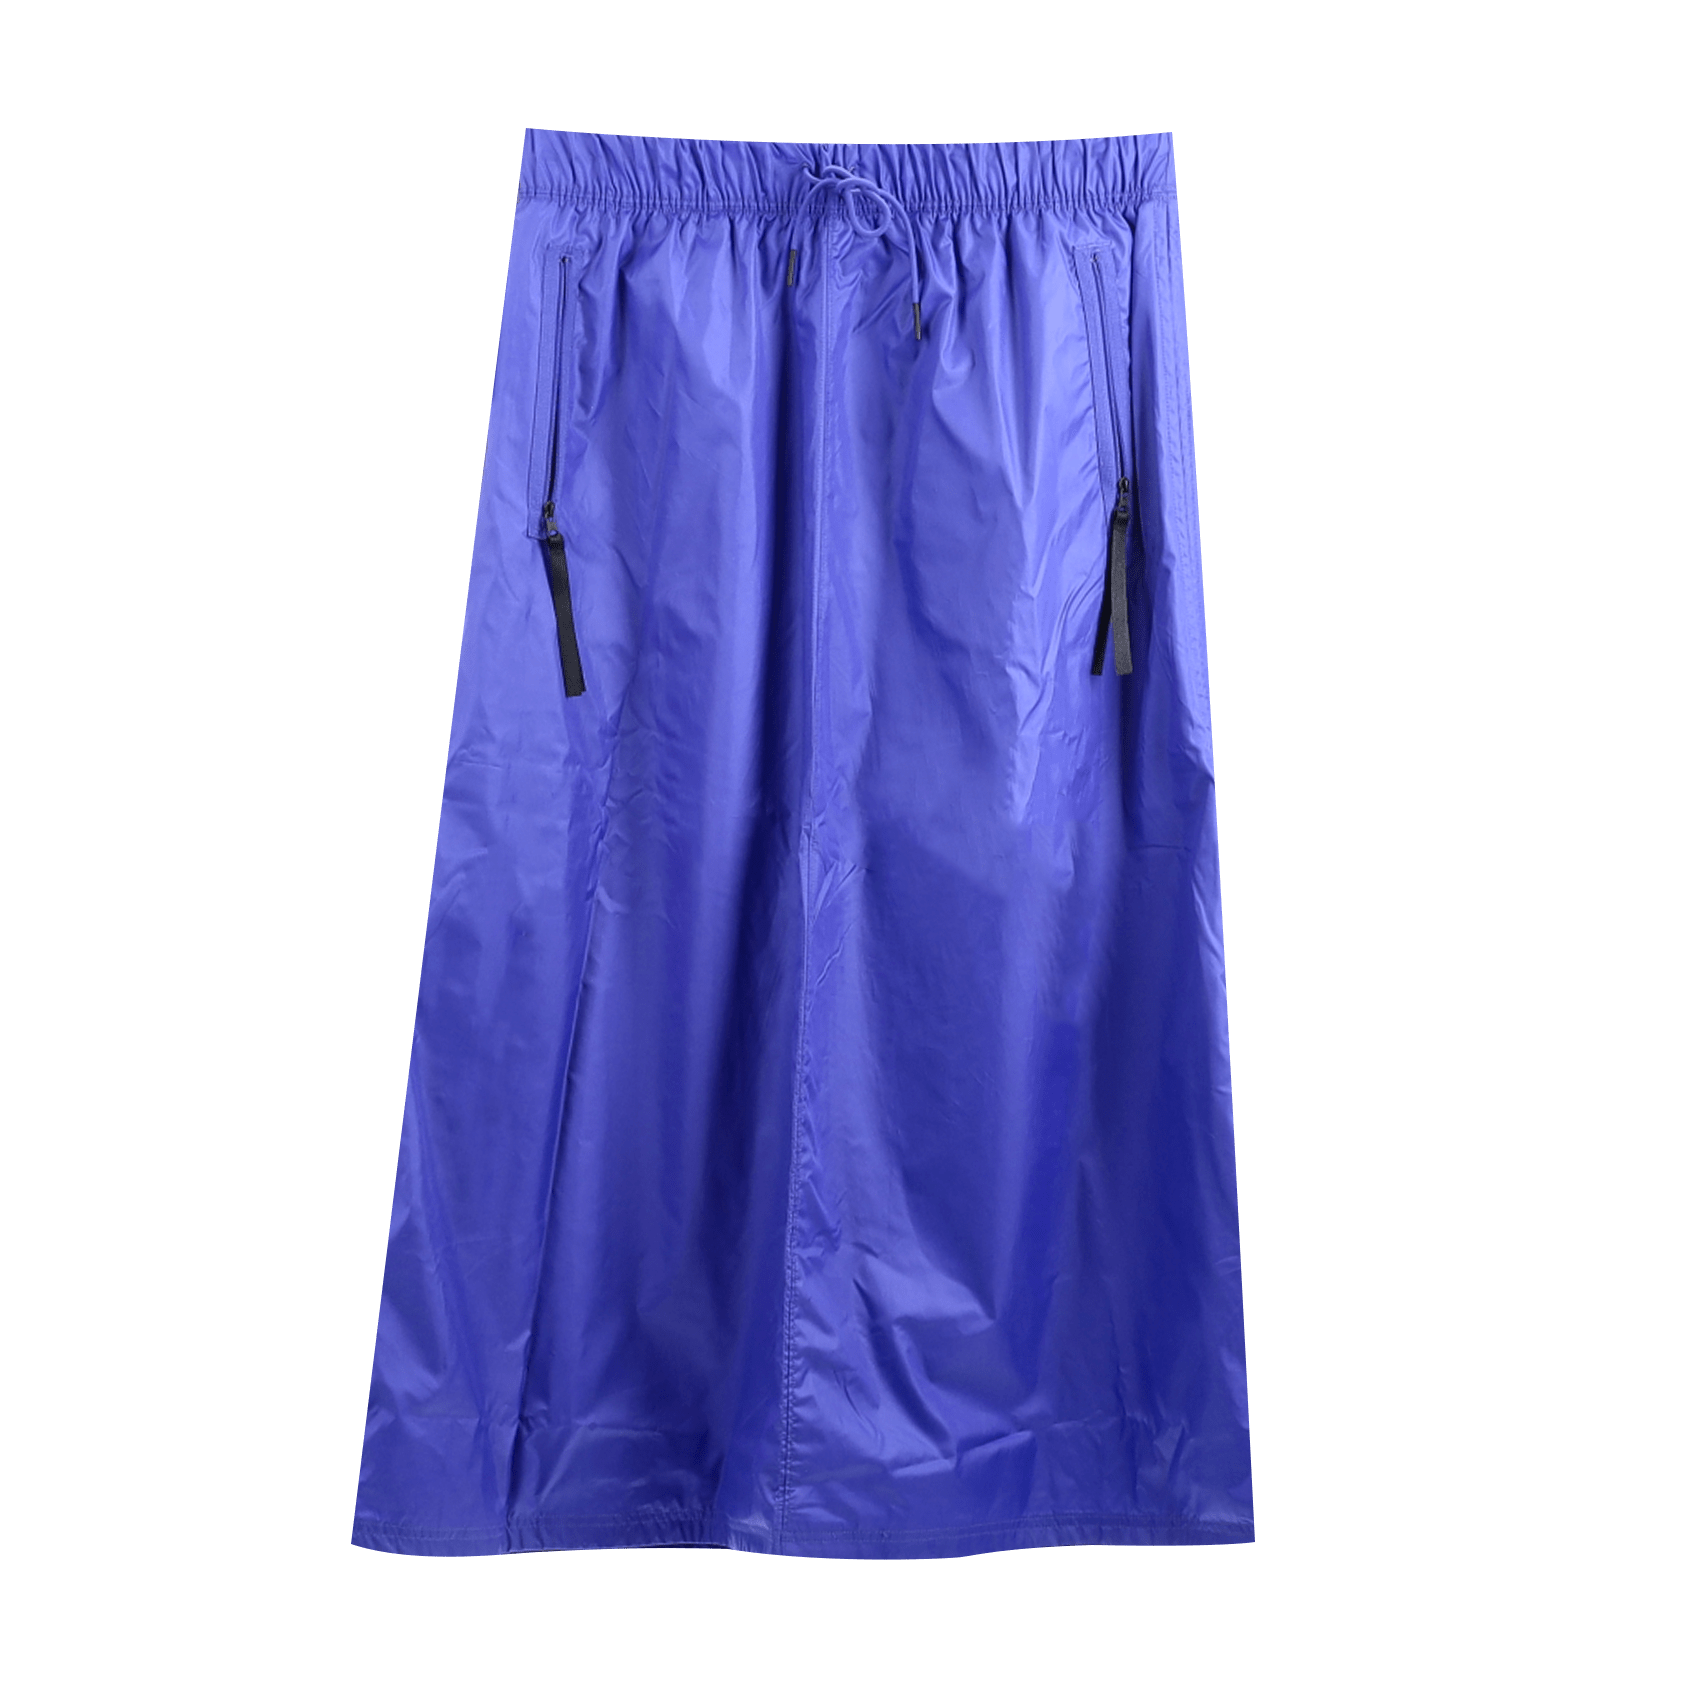 Tech Pack Skirt - Blue.